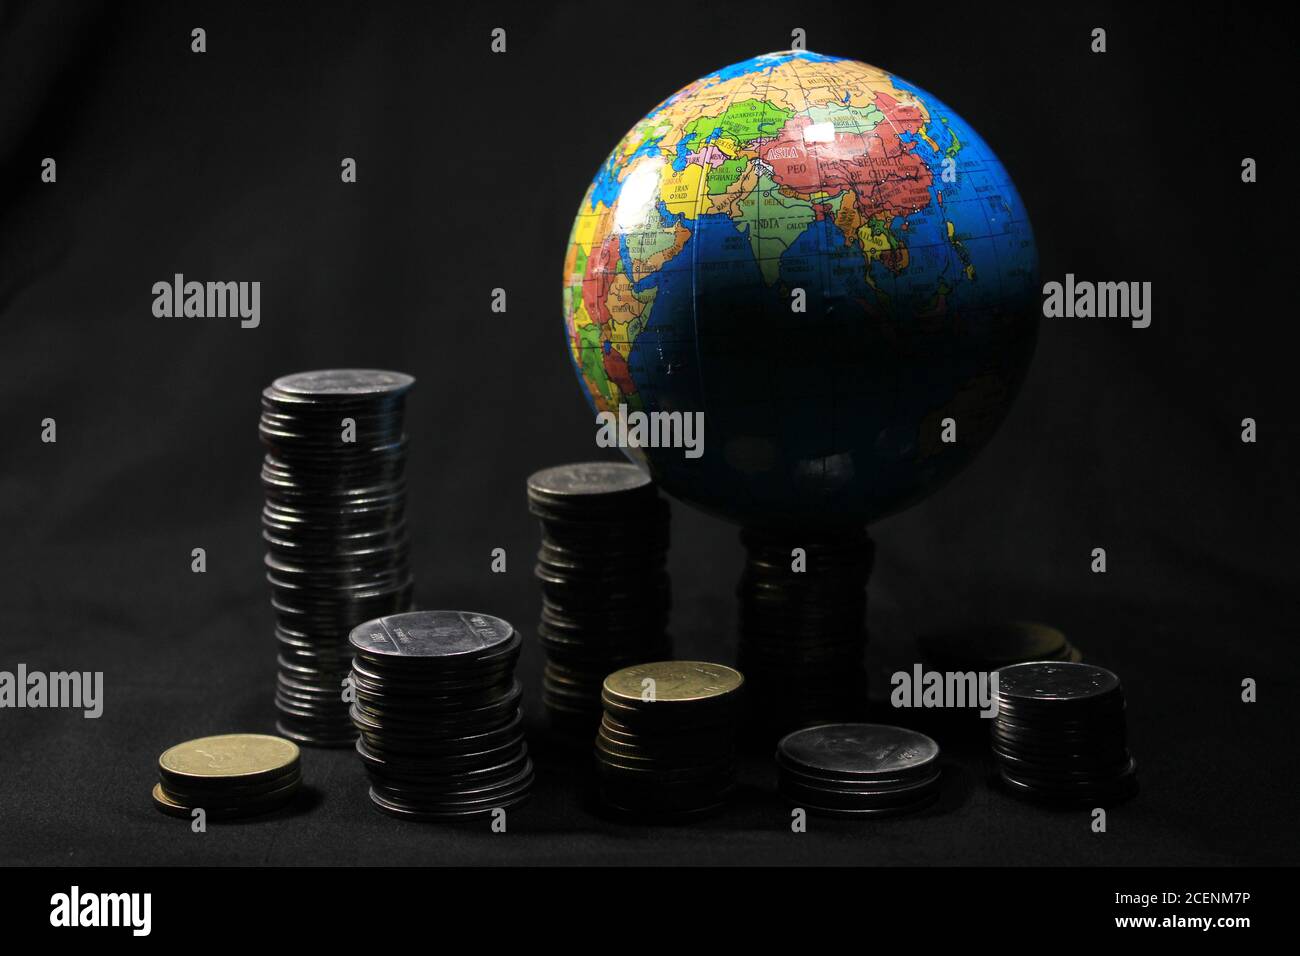 Pile de 1, 2, 5, 10 monnaie en métal de la roupie indienne avec globe isolé sur fond noir. Concept financier, économique, d'investissement. Banque D'Images